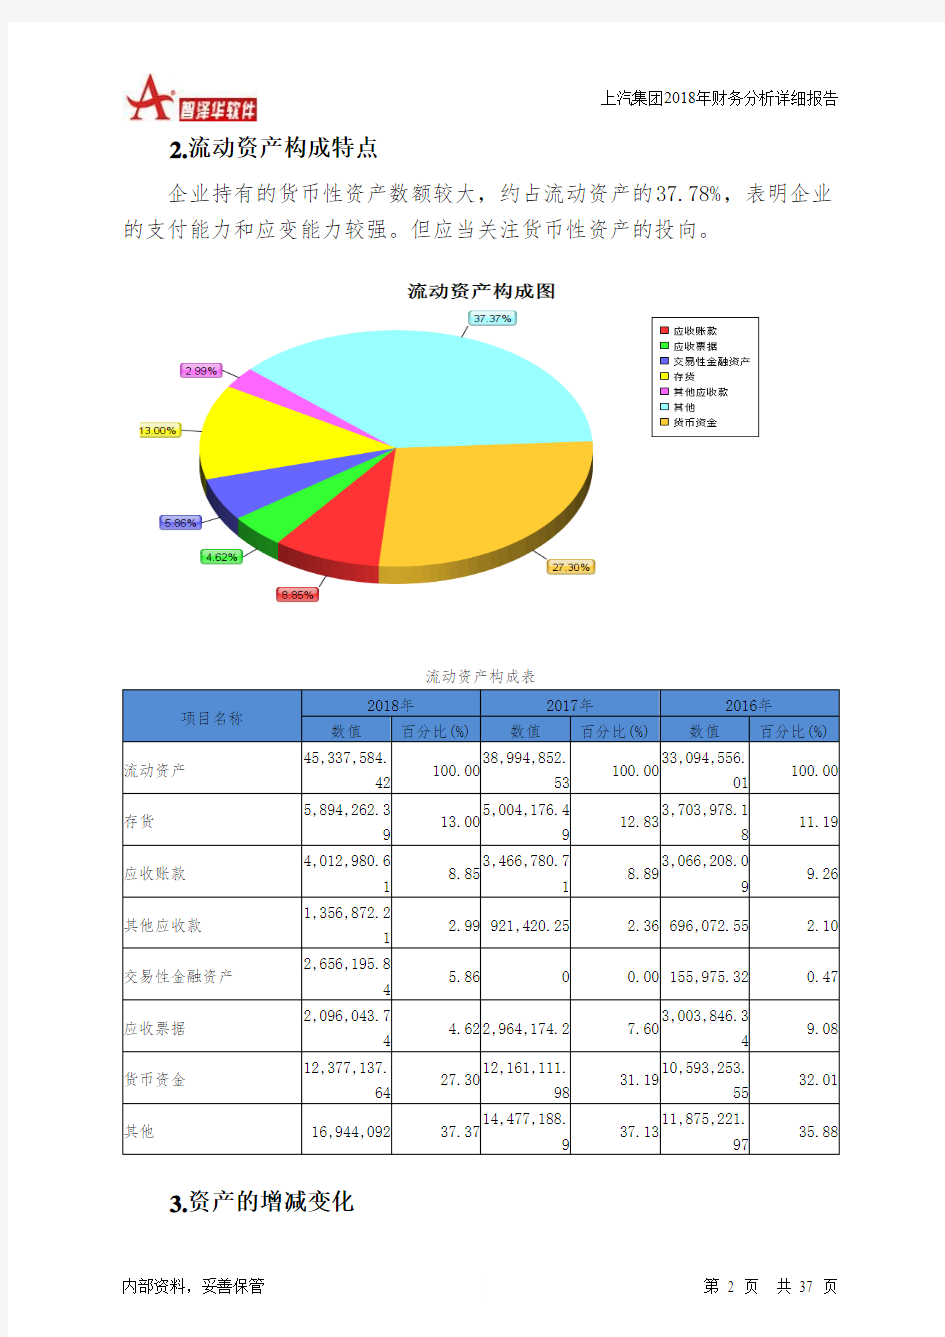 上汽集团2018年财务分析详细报告-智泽华